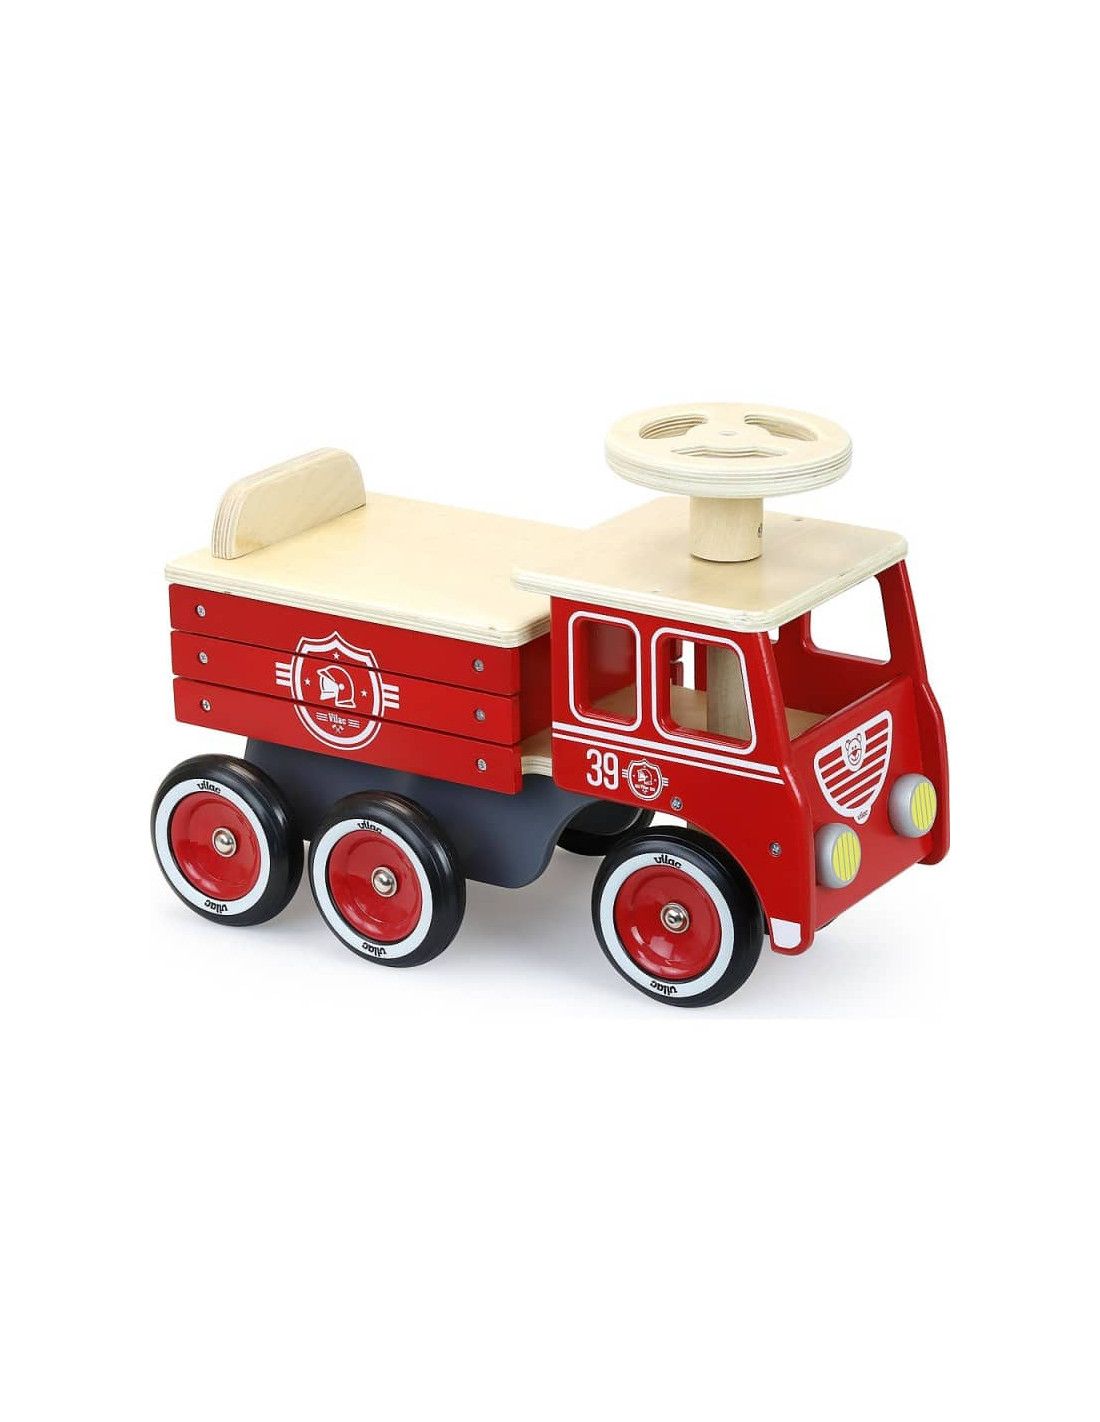 Camion de Pompier Vilac Vehicule Enfant dès 18 mois, Idée Cadeau Garçon,  Boutique en Ligne Suisse